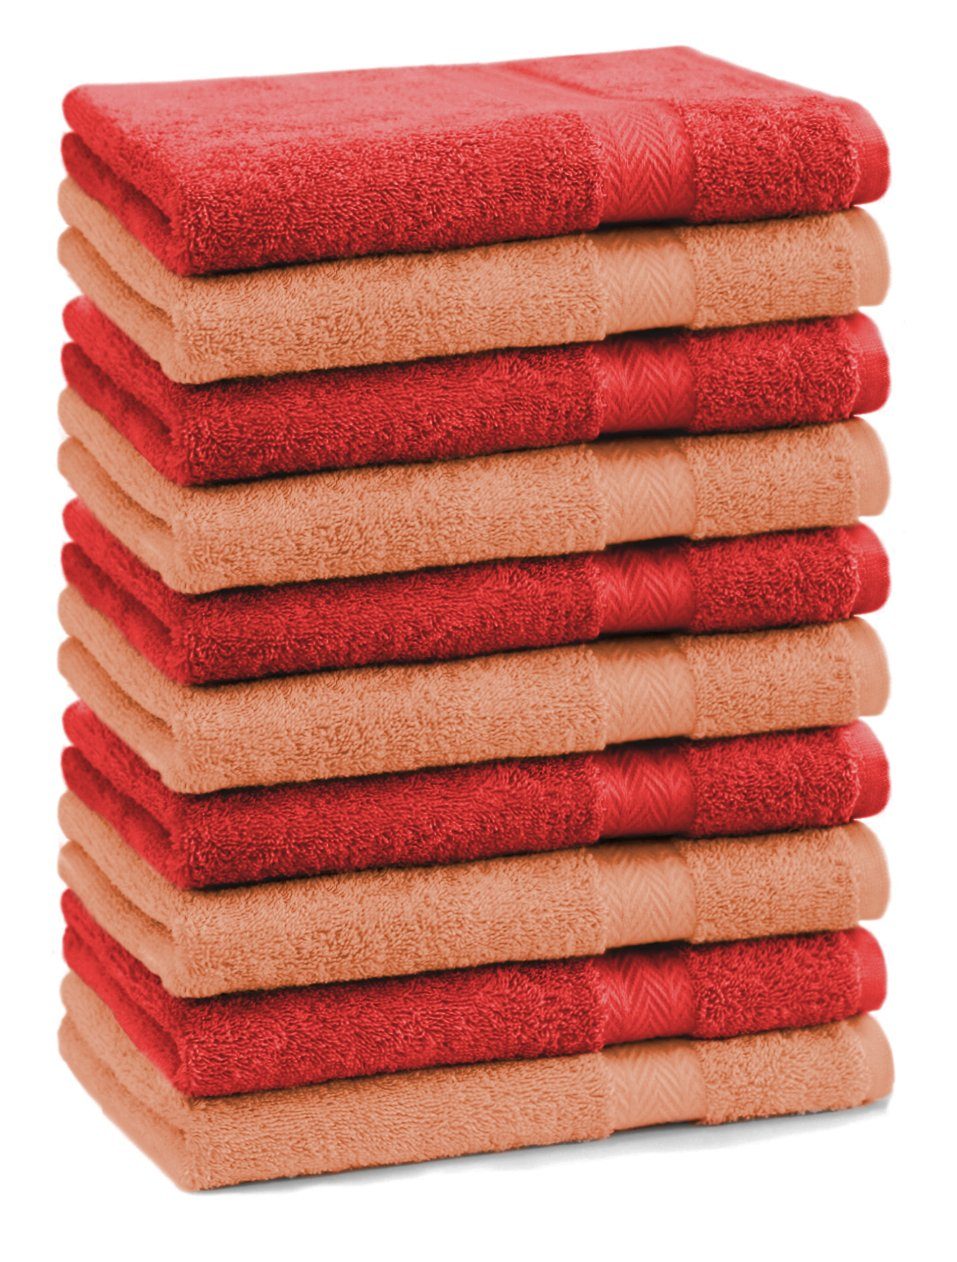 Betz Seiftuch 10 Stück Seiftücher Premium 100% Baumwolle Seiflappen Set 30x30 cm Farbe orange und rot